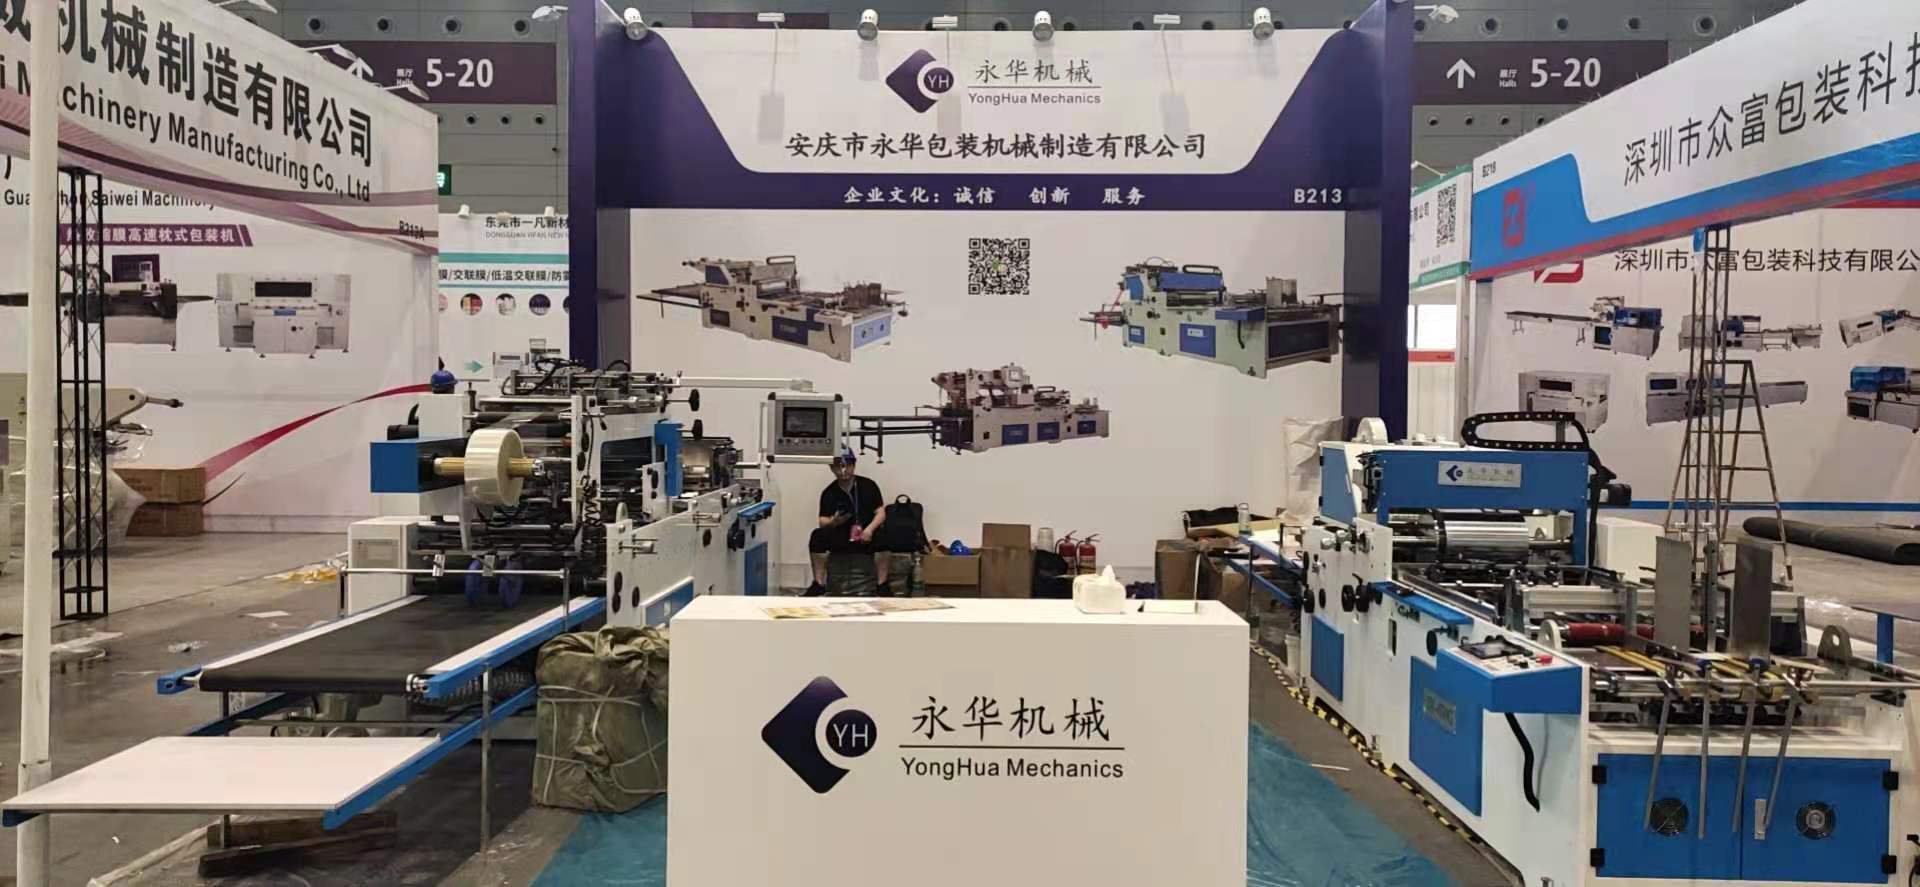 包装机械展览会_上海包装展览2019_农业展会博会节水灌溉展览